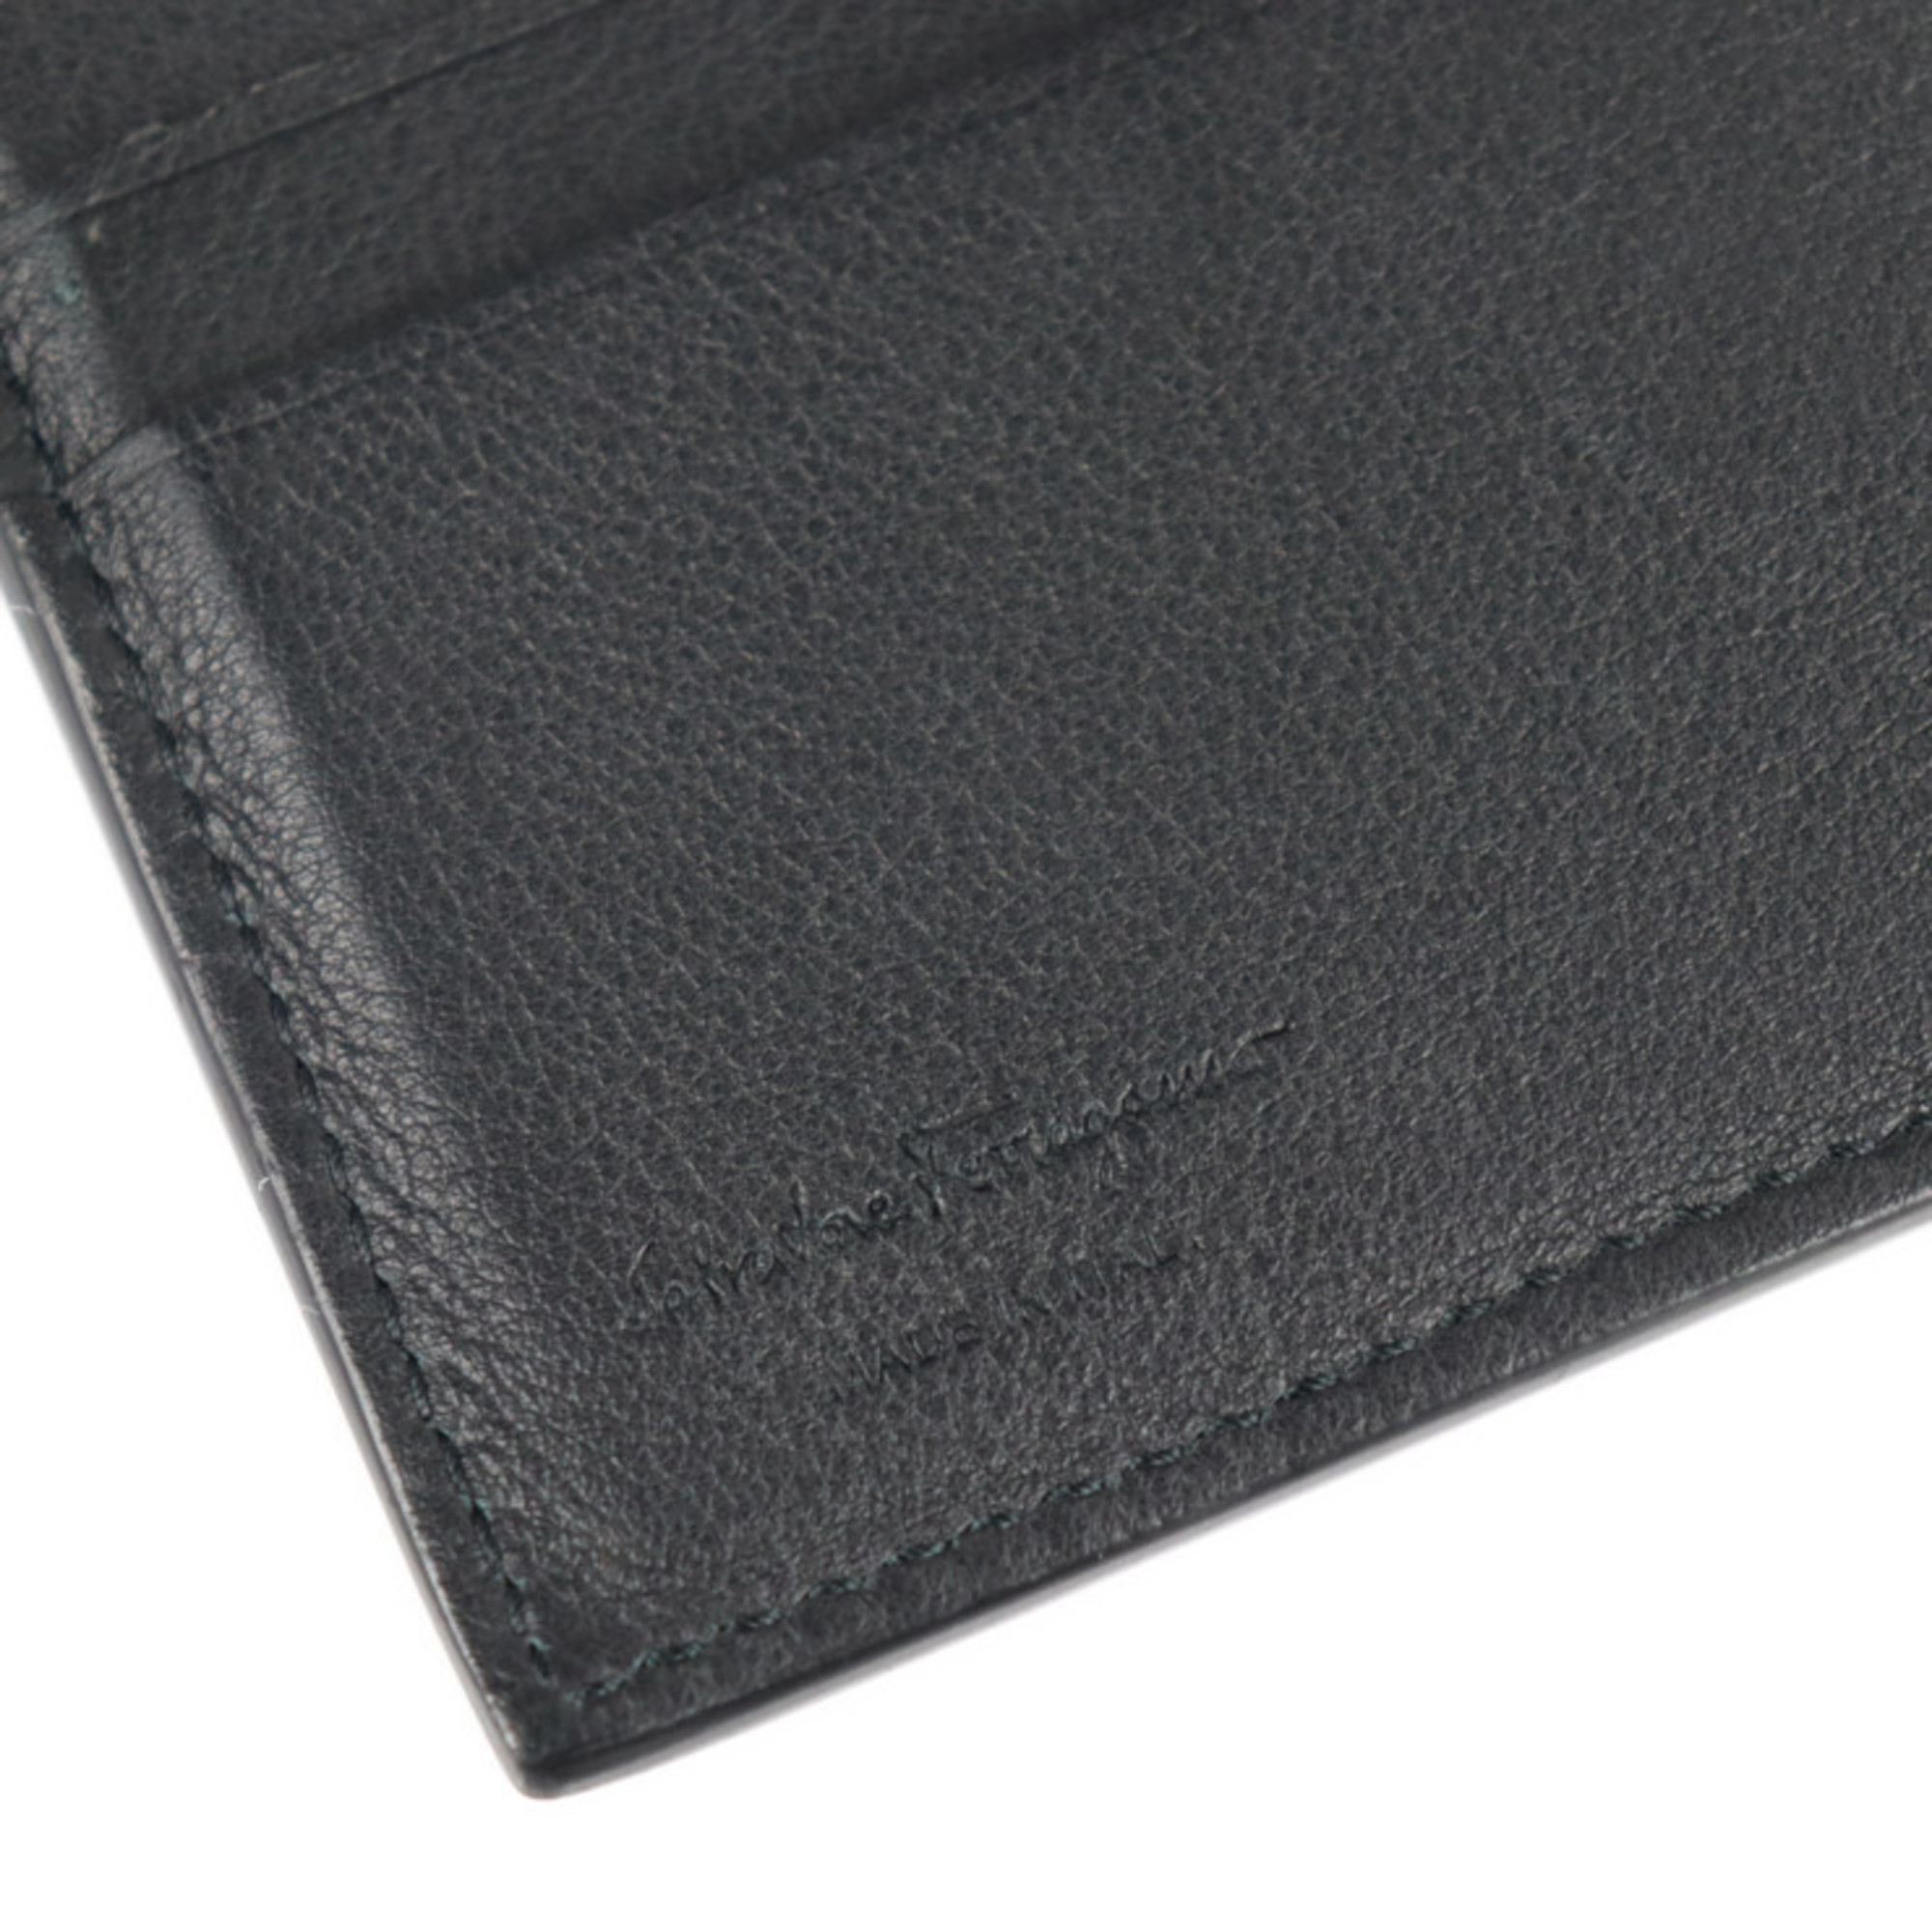 Salvatore Ferragamo micro studs folio wallet 66 A376 leather black logo